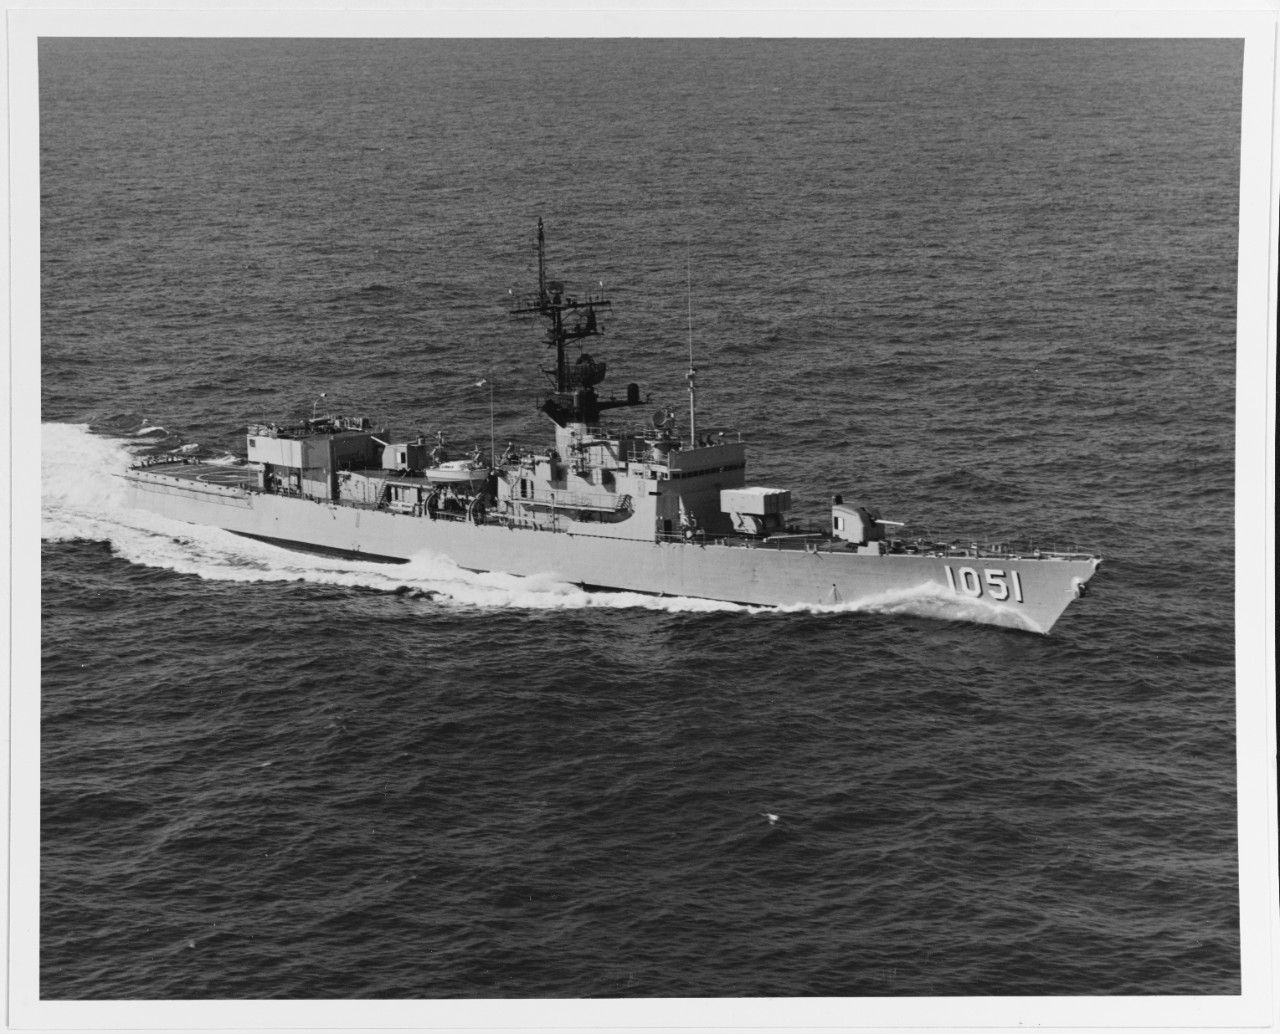 USS O'CALLAHAN (DE-1051)